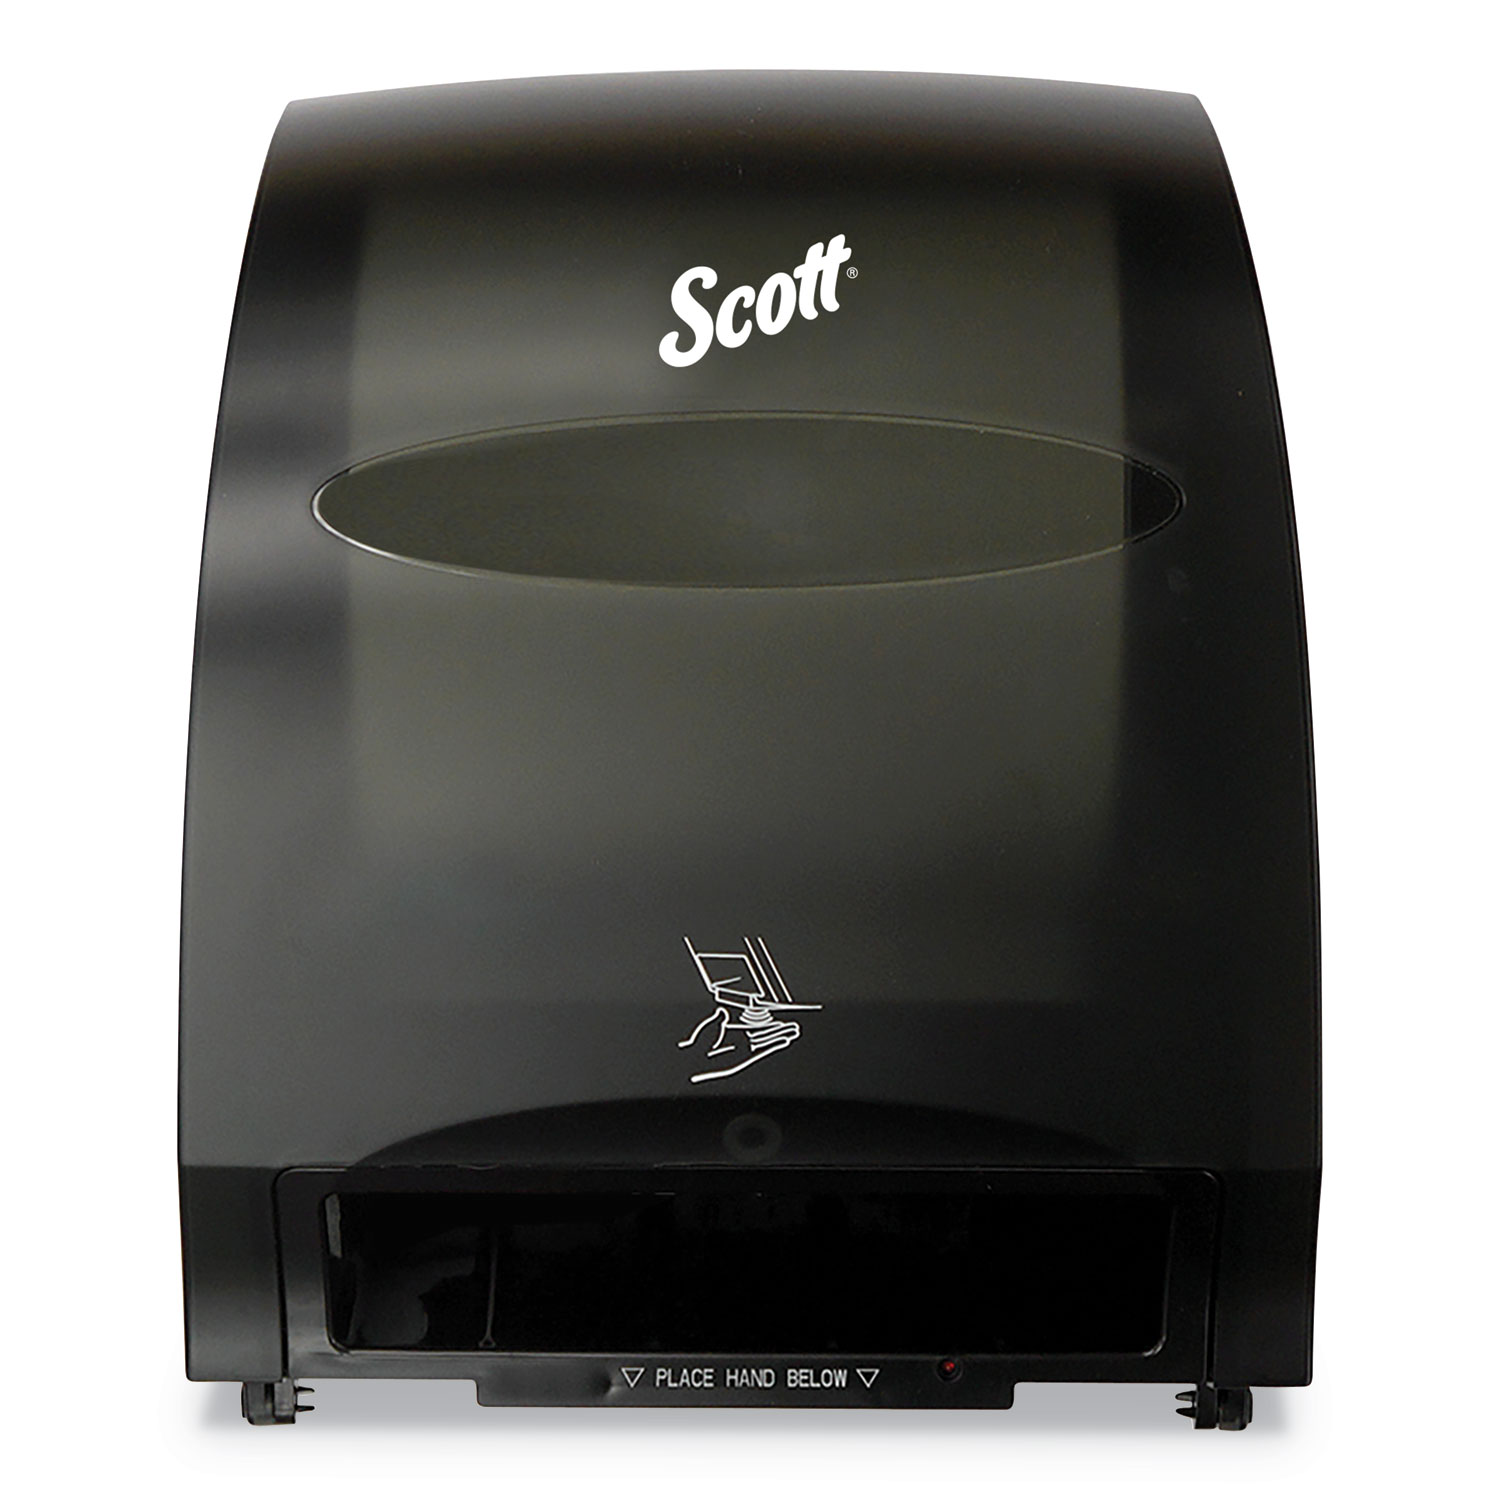 Scott® Essential™ System Hard Roll Towel Dispenser - Black, 12.7" x 15.76" x 9.57"